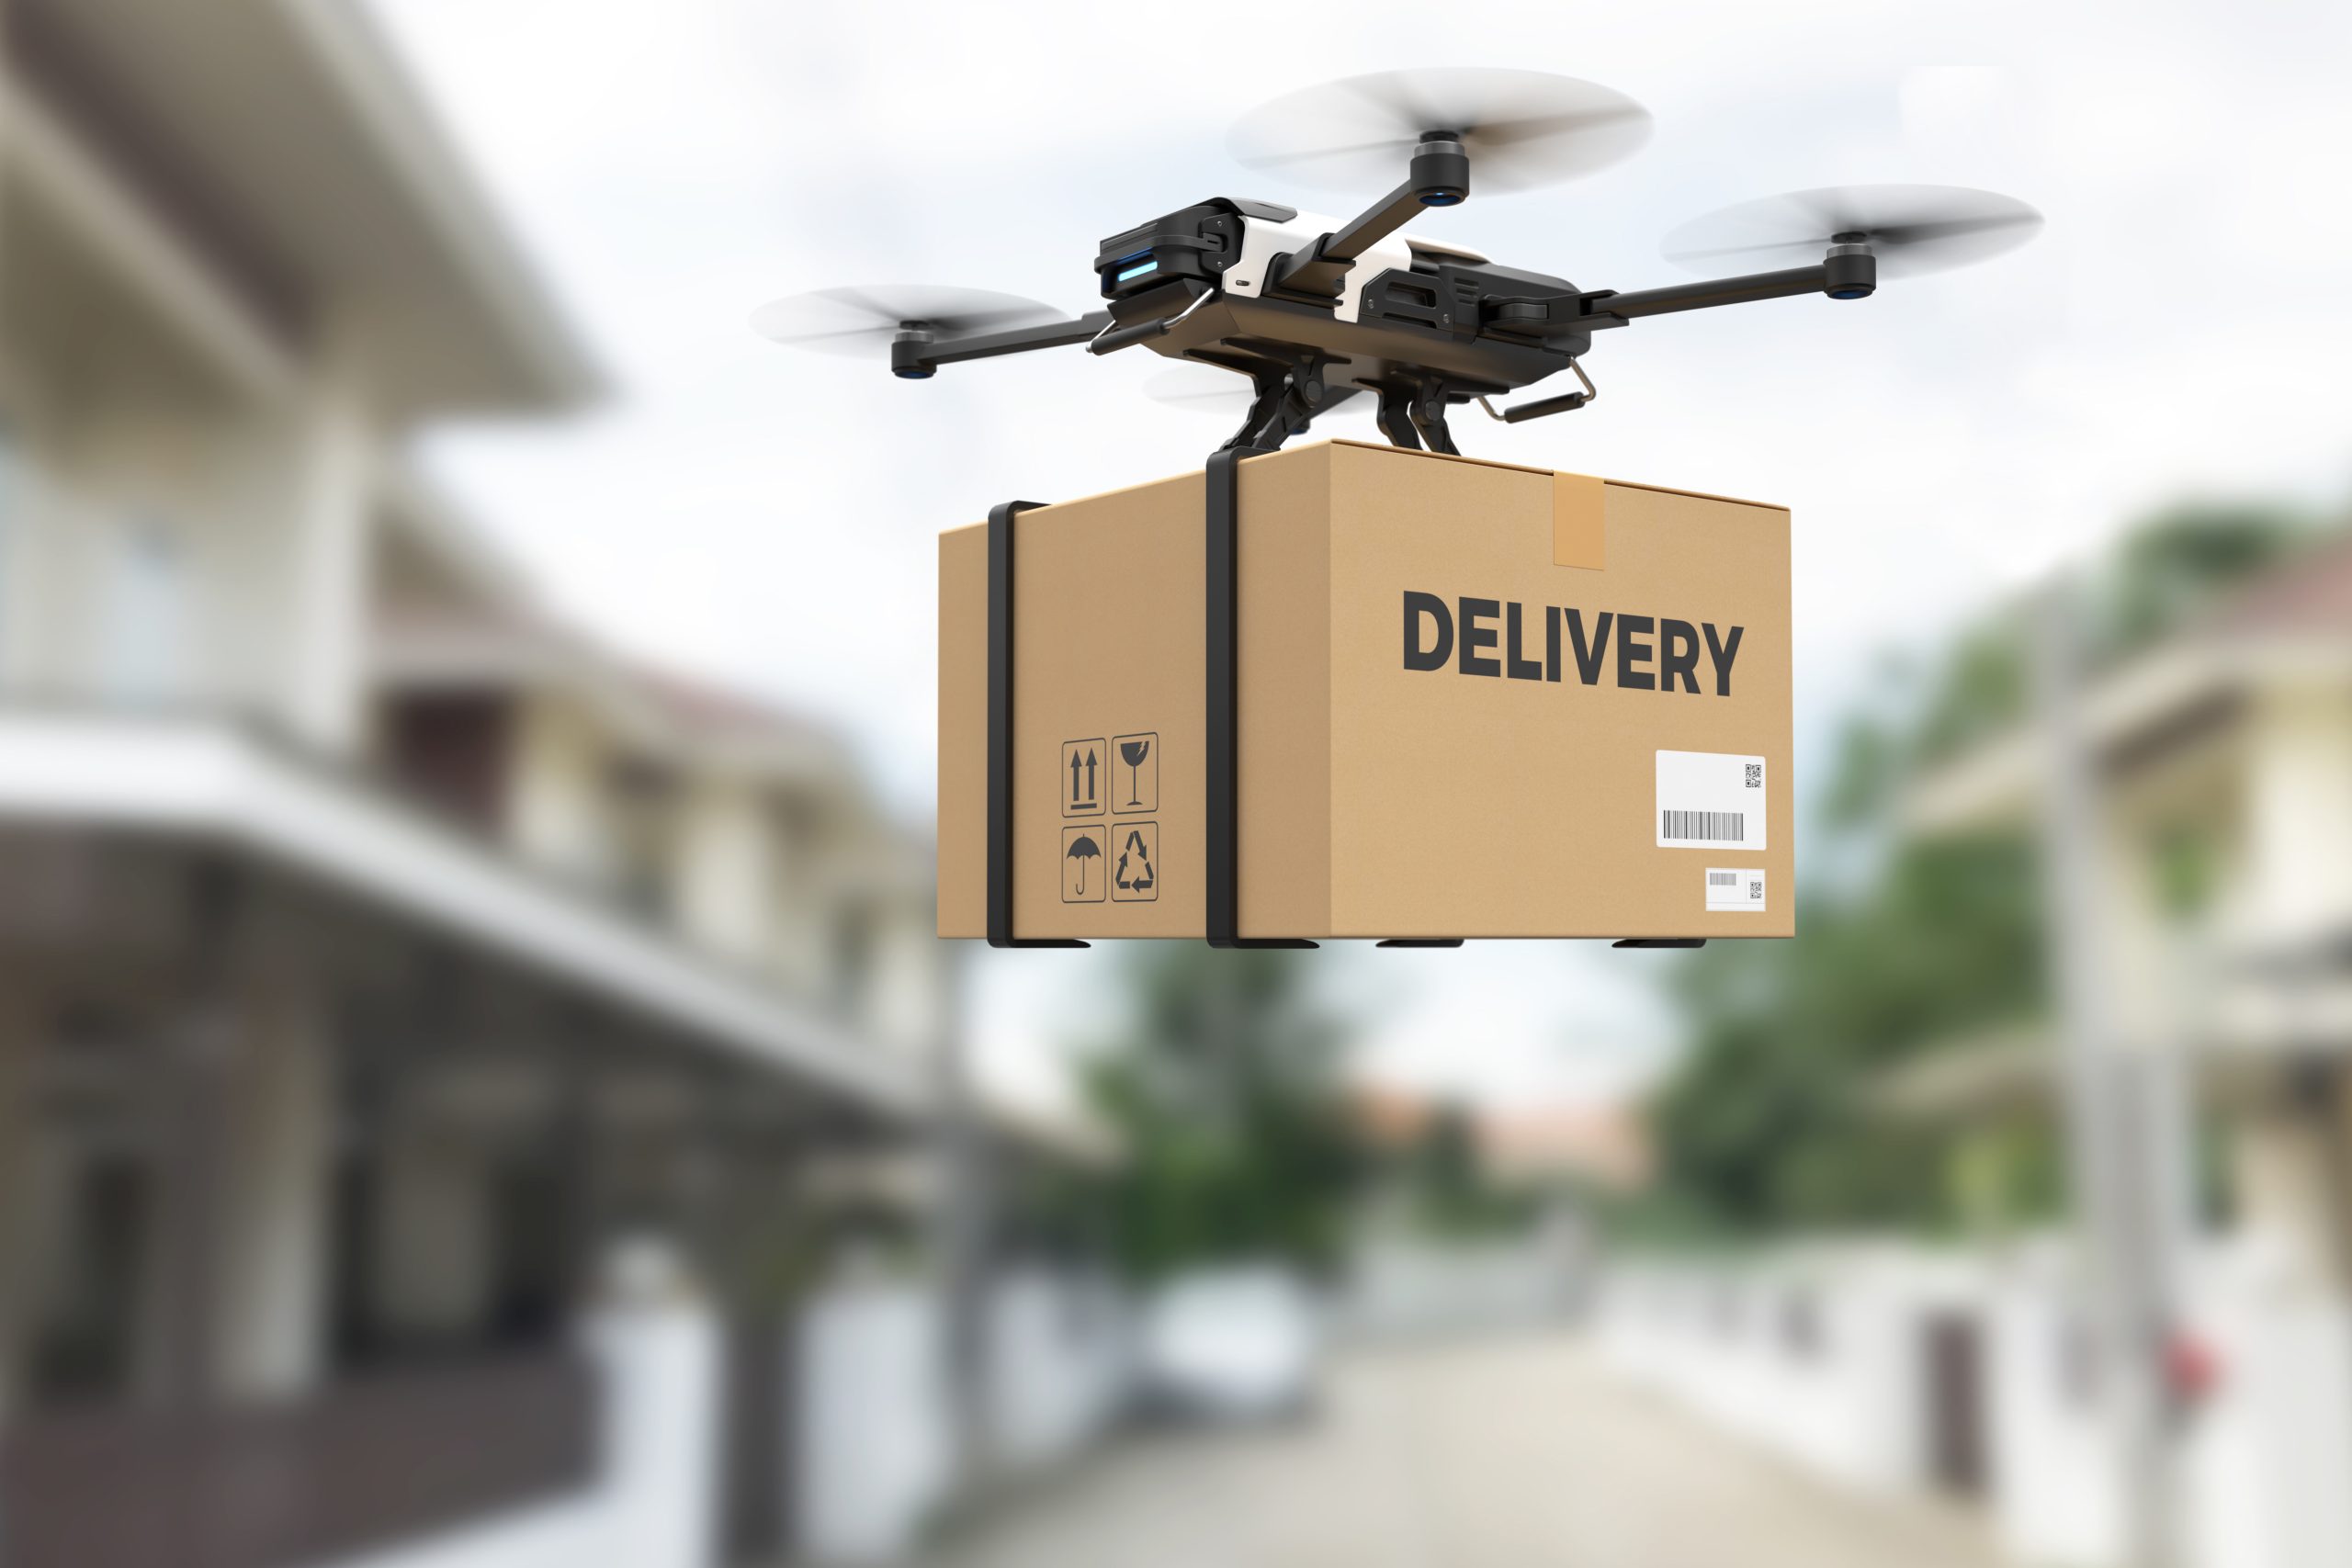 Featured image for “Walmart amplia entrega por drones nos EUA”